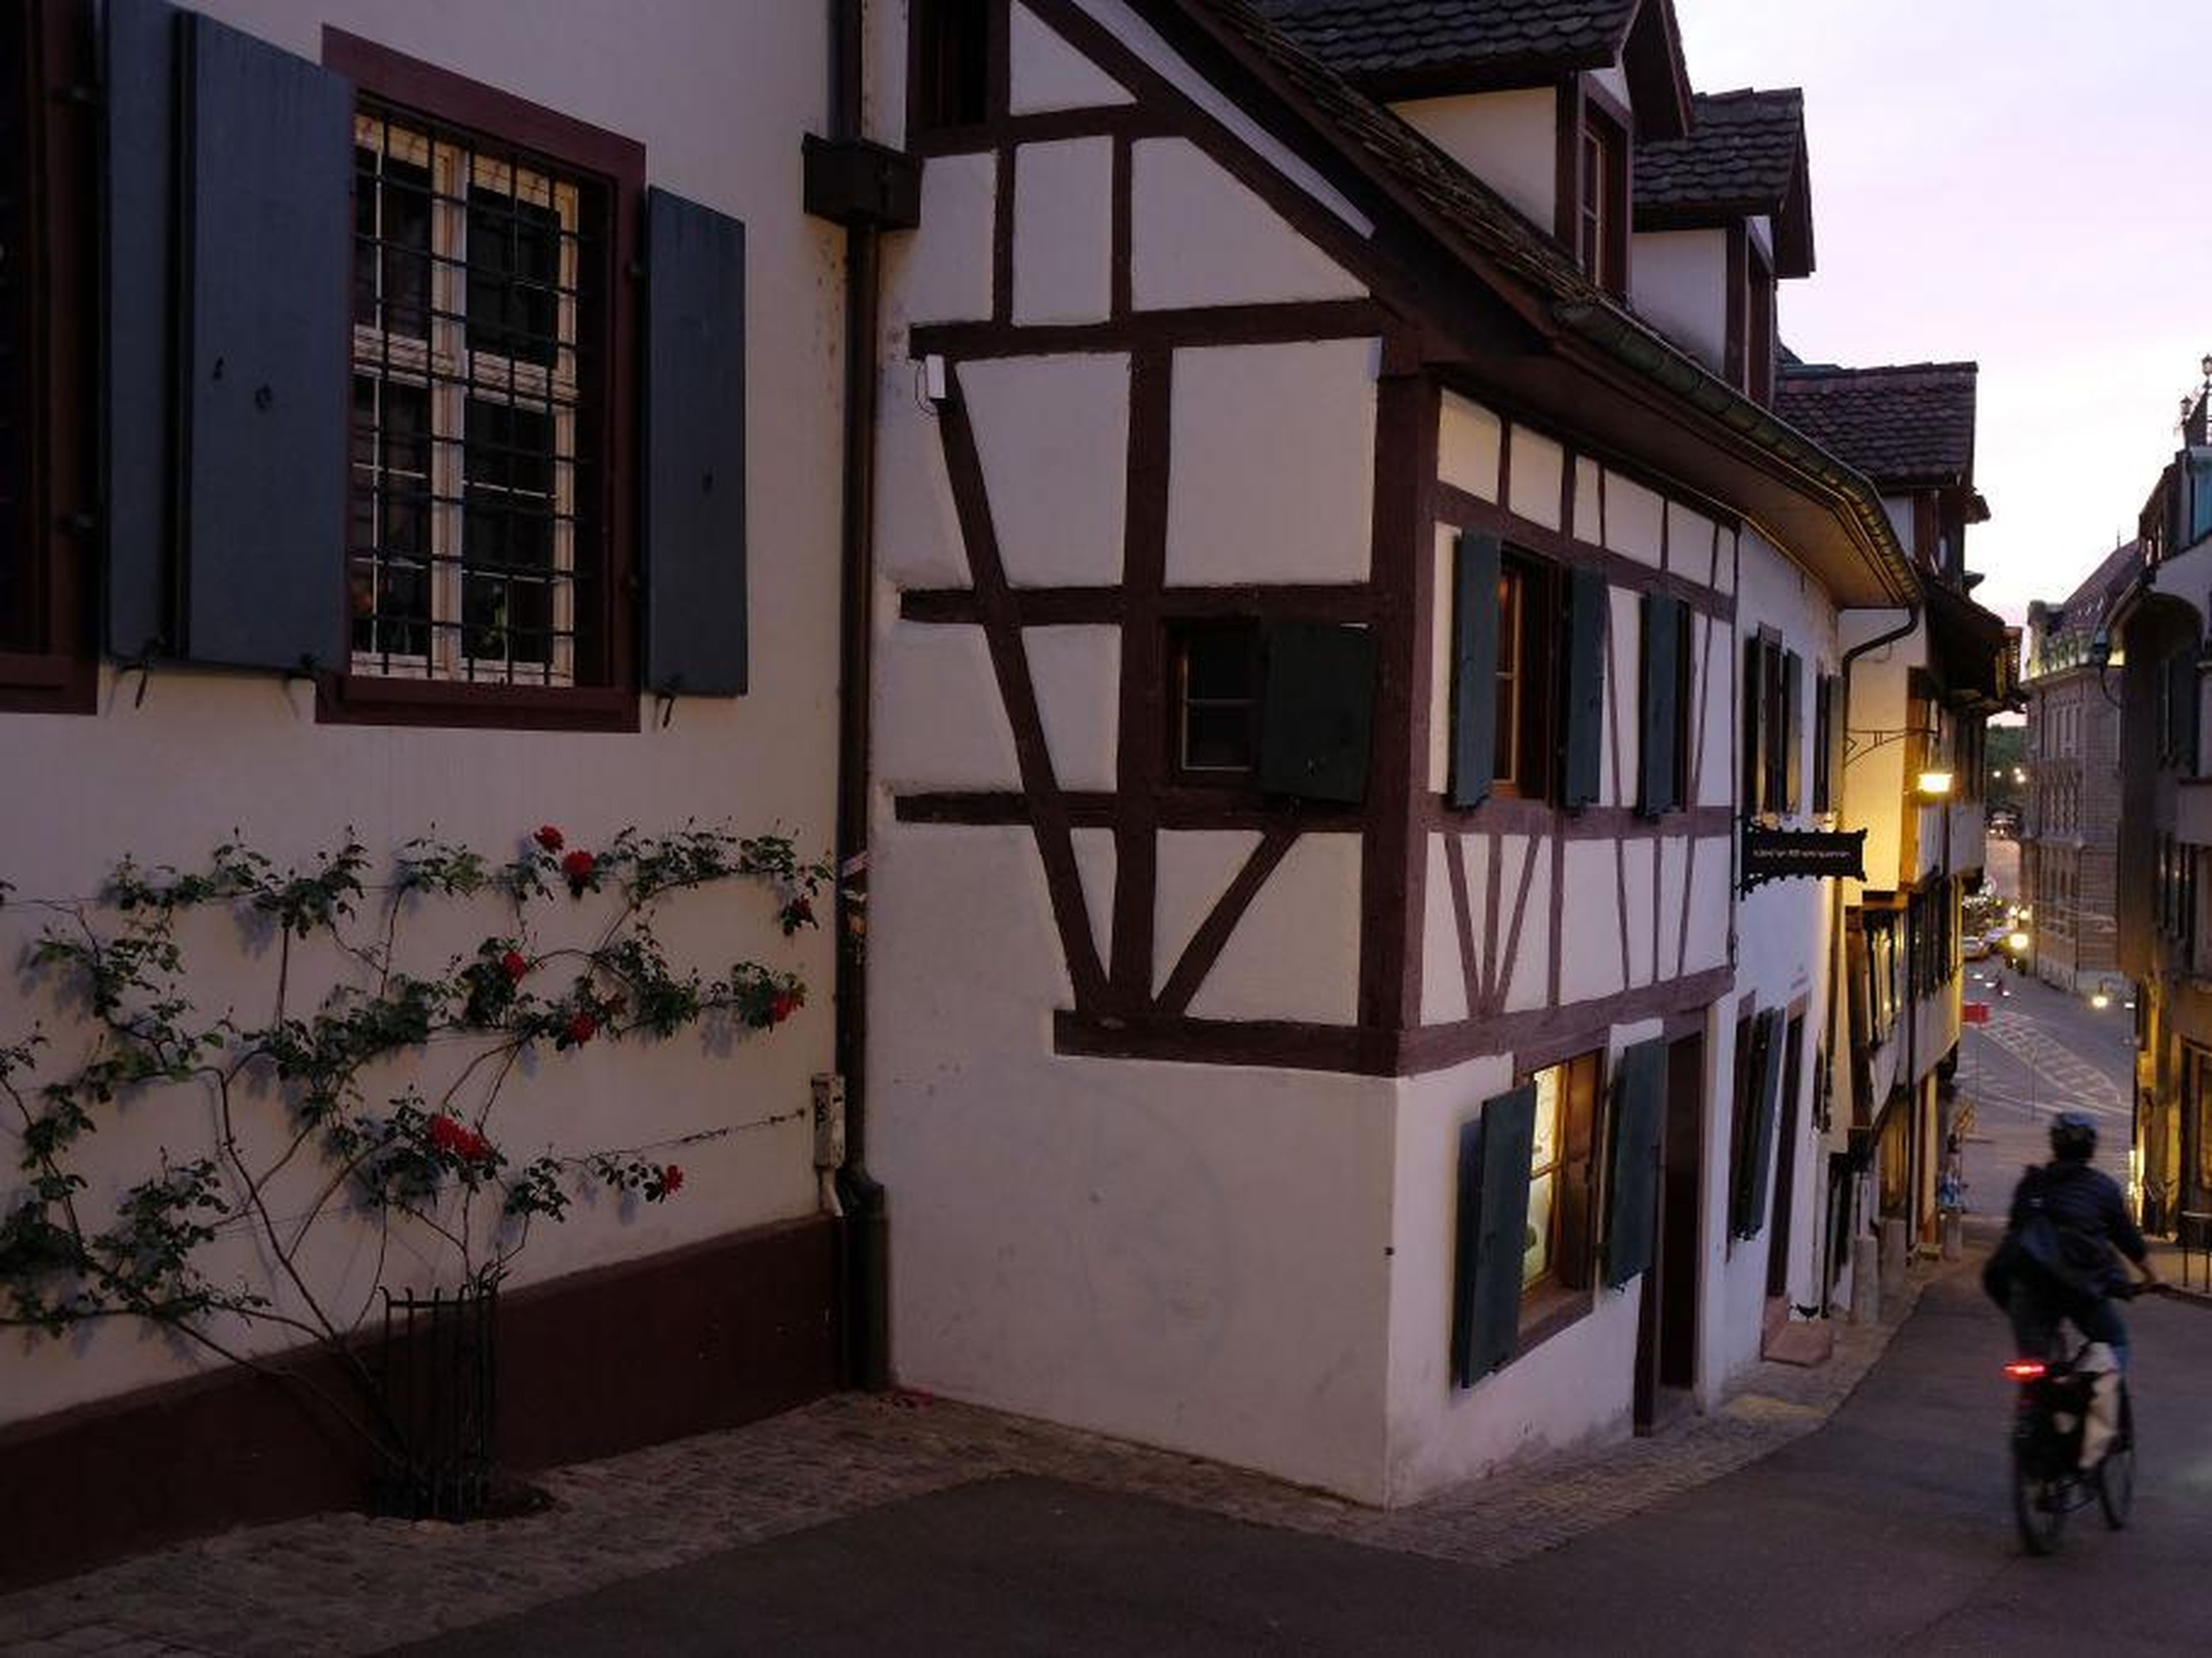 Casa del siglo XV y XVI en la calle Rheinsprung, en Basel, Suiza.